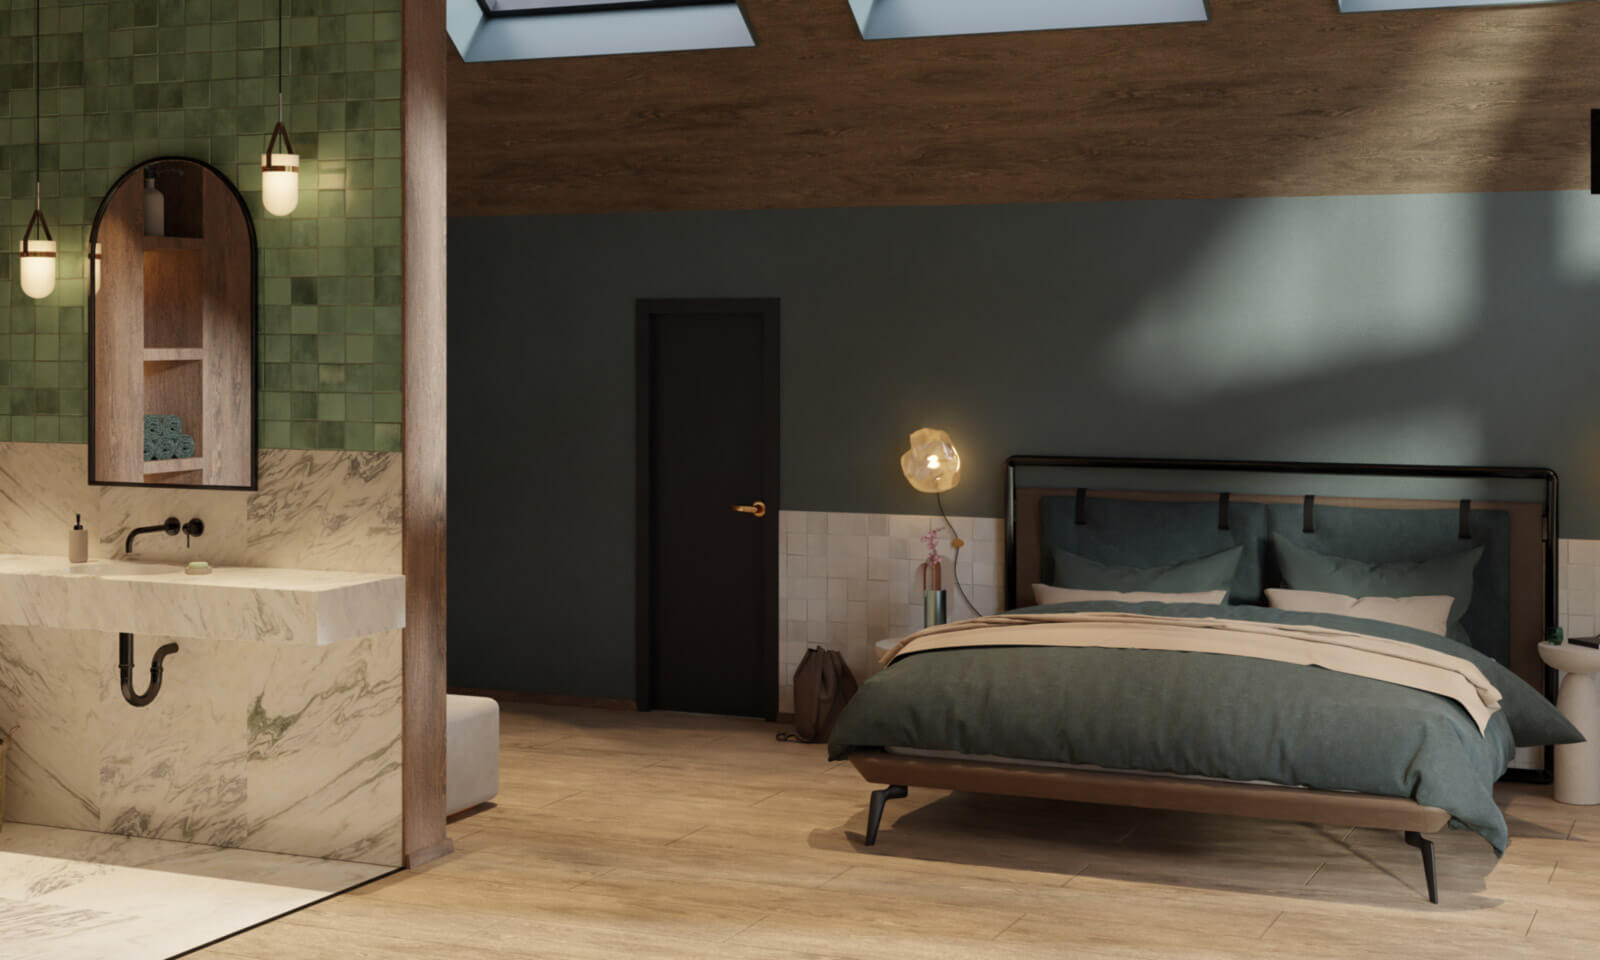 Háló és fürdőszoba 3D látványterv egyben, ahol látható az ágy és a mosdó is